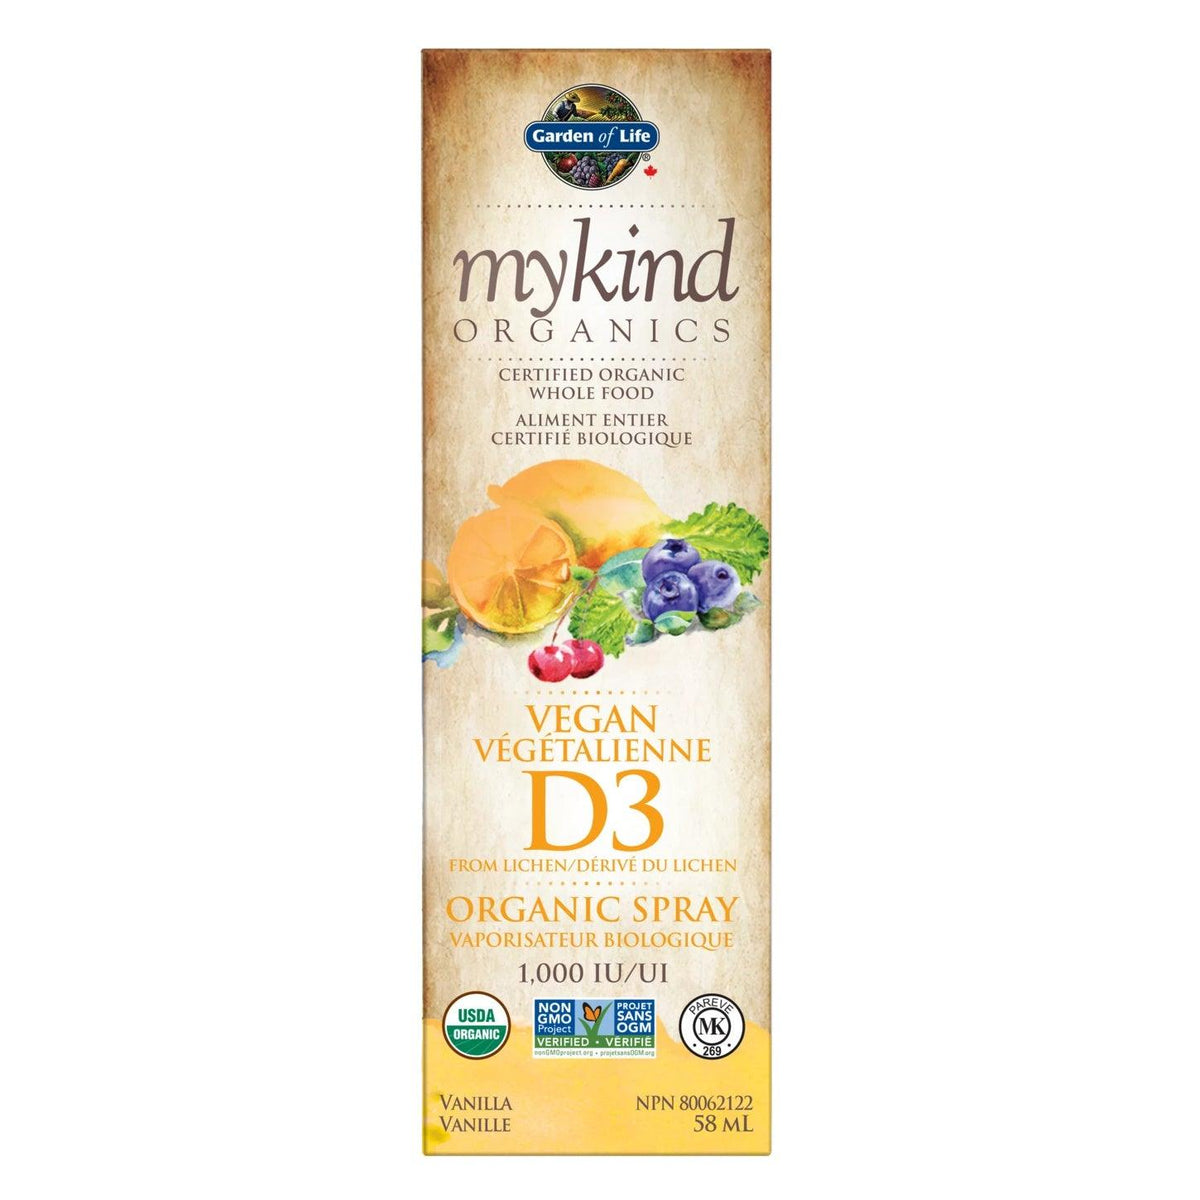 Garden of Life Mykind Organics Vegan D3 Vanilla Flavor Spray Vitamins - Vitamin D at Village Vitamin Store